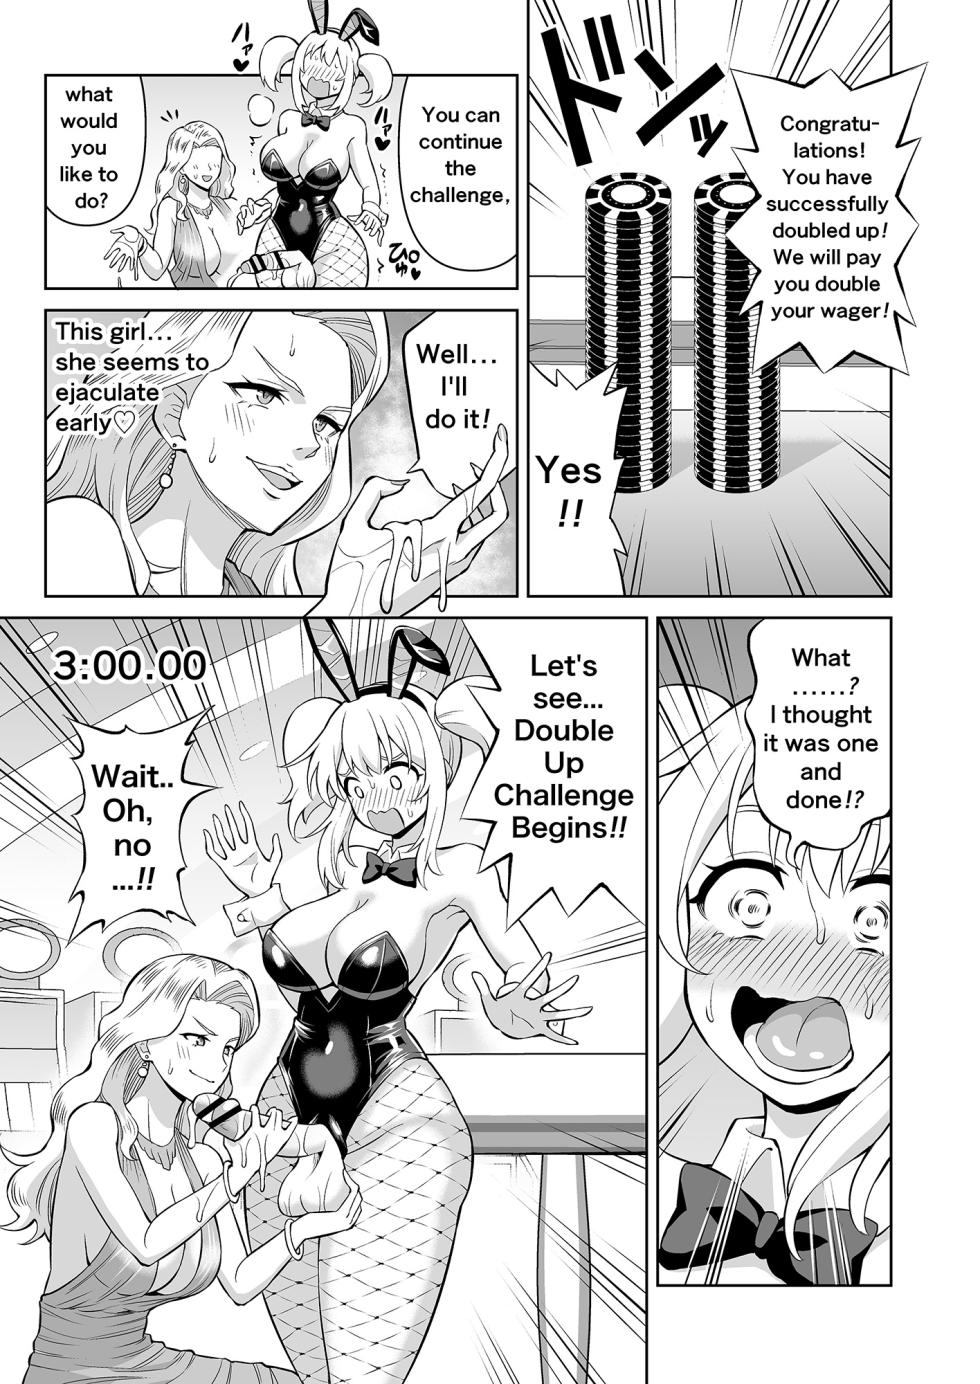 [Hitsumabushi] Double Up Challenge! [English] - Page 6